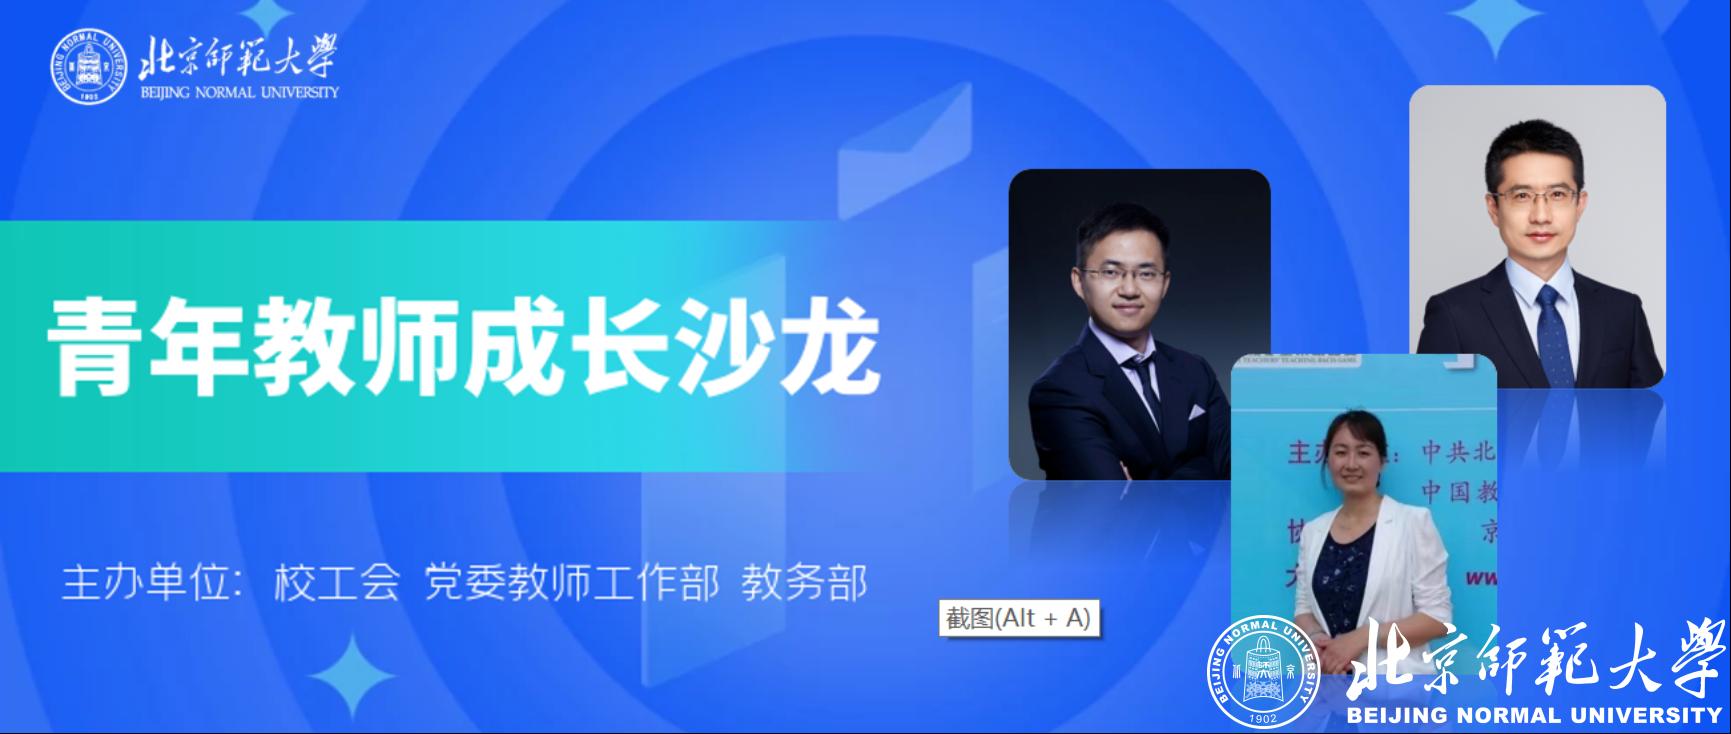 C:\Users\22353\Desktop\【新闻稿】北京师范大学举办青年教师成长沙龙\头图.png